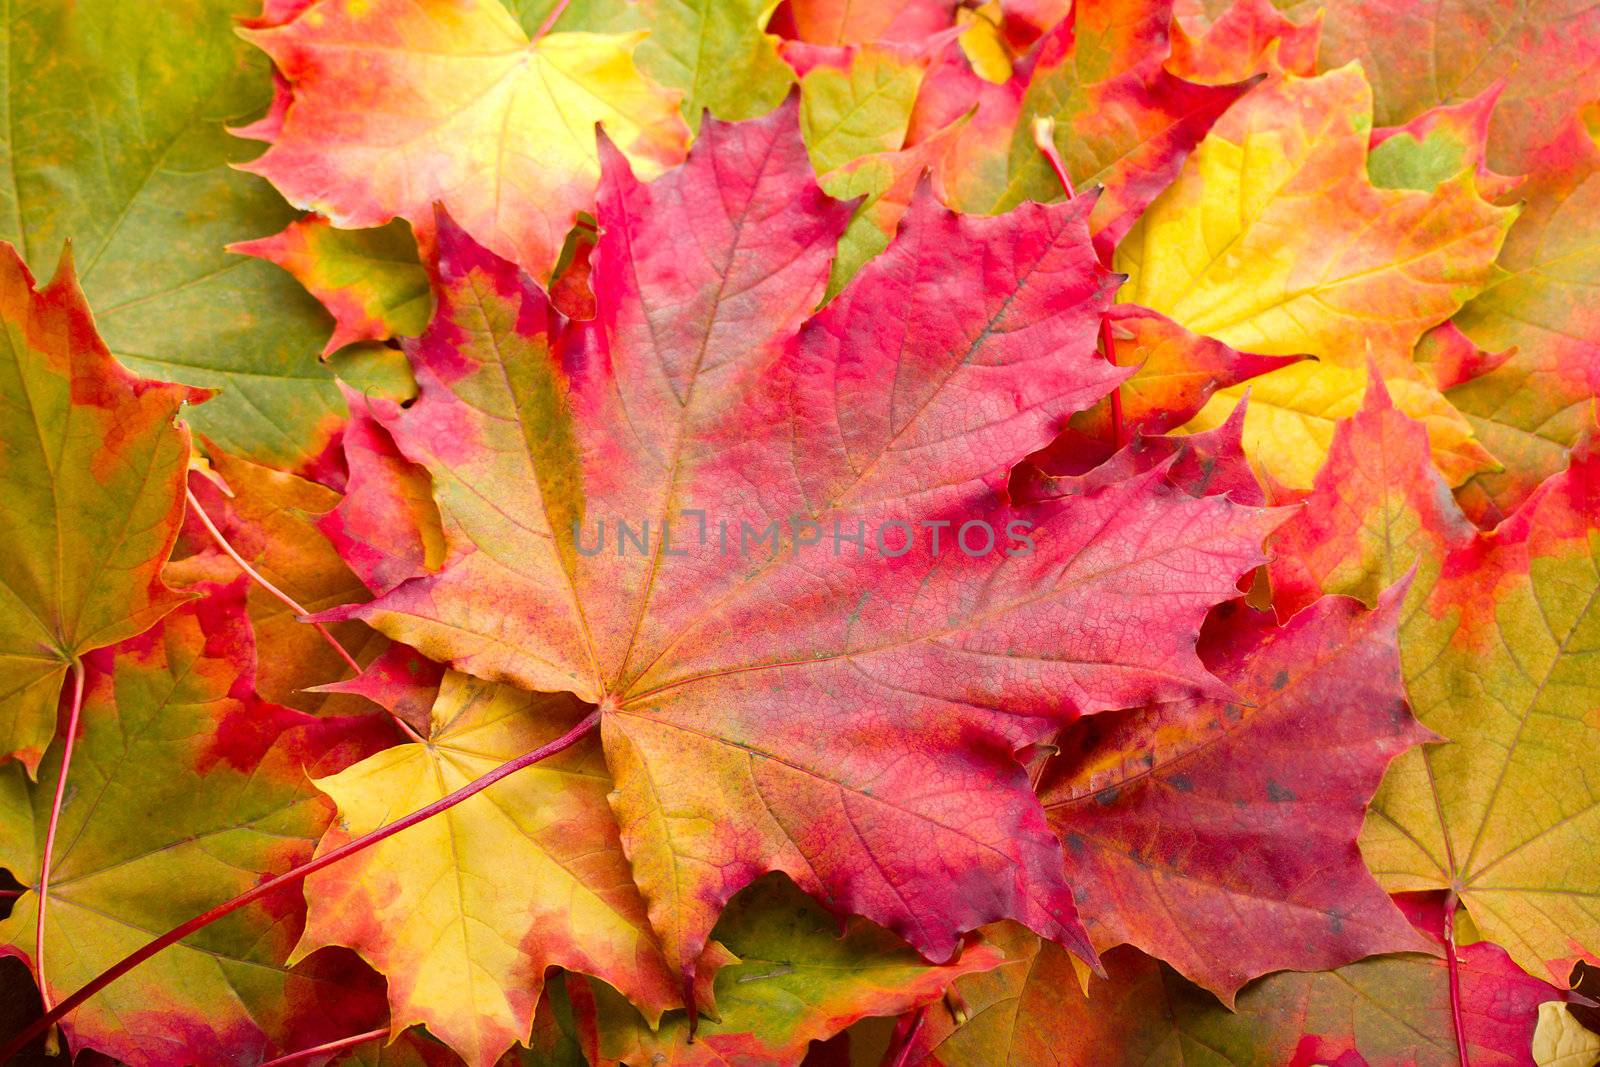 autumn maple leaf on leaves background